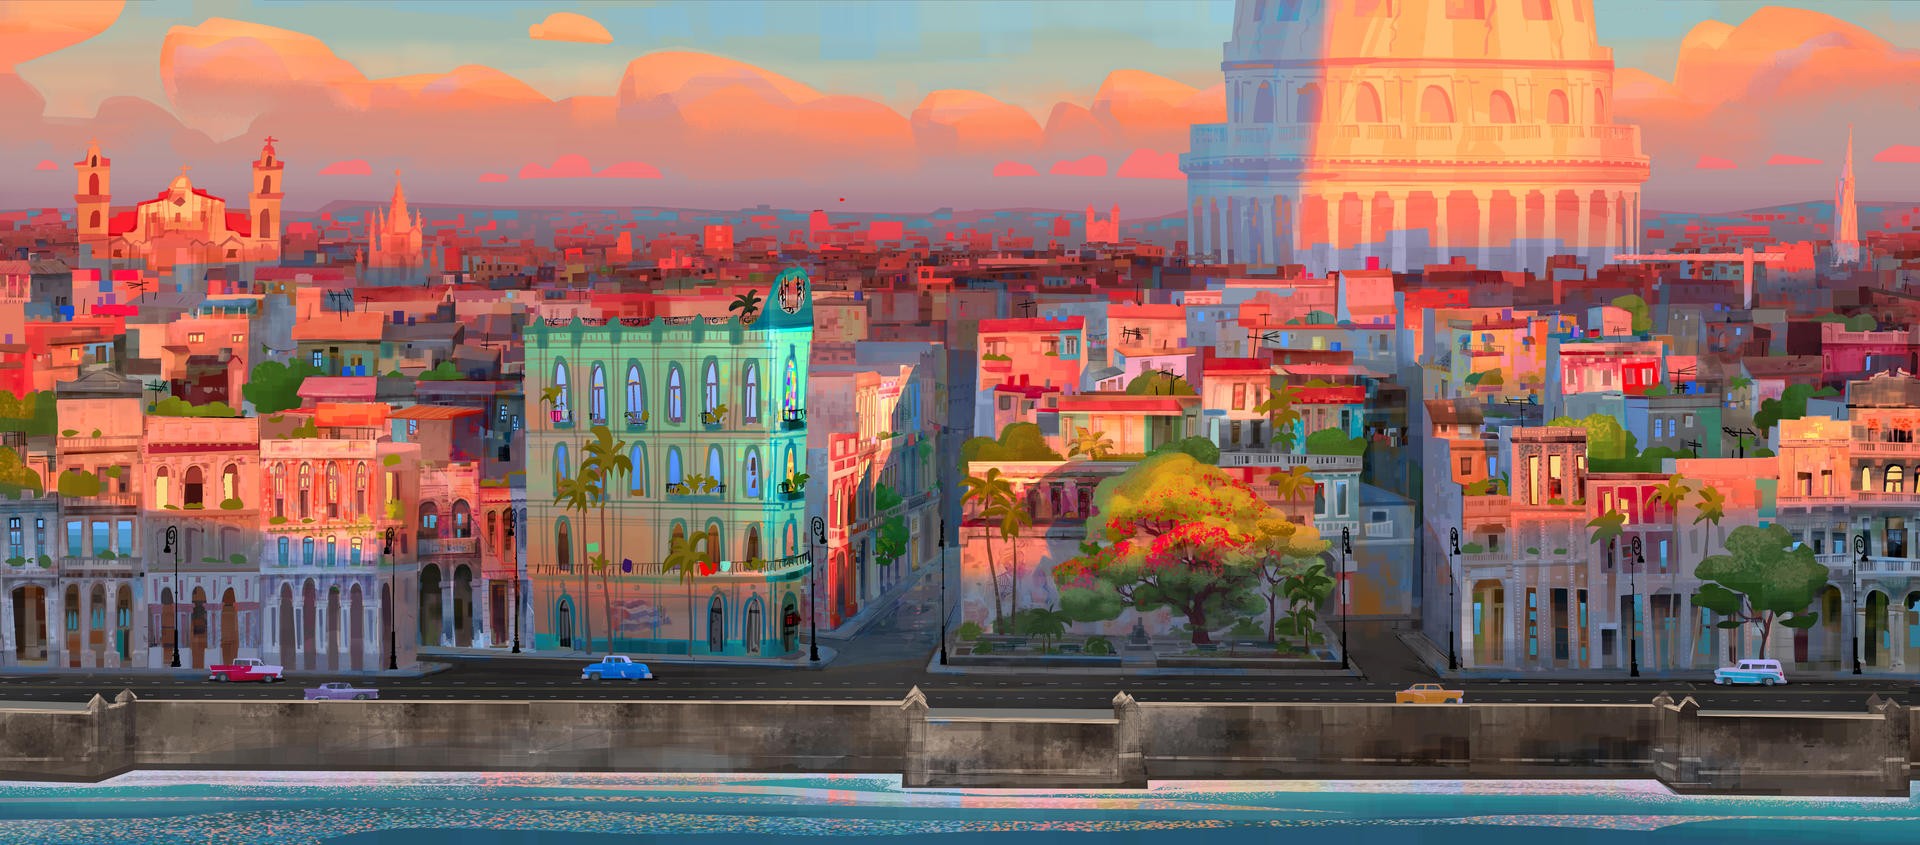 Uma das imagens conceituais de Havana criadas pelos animadores  (Foto: Andy Harkness)